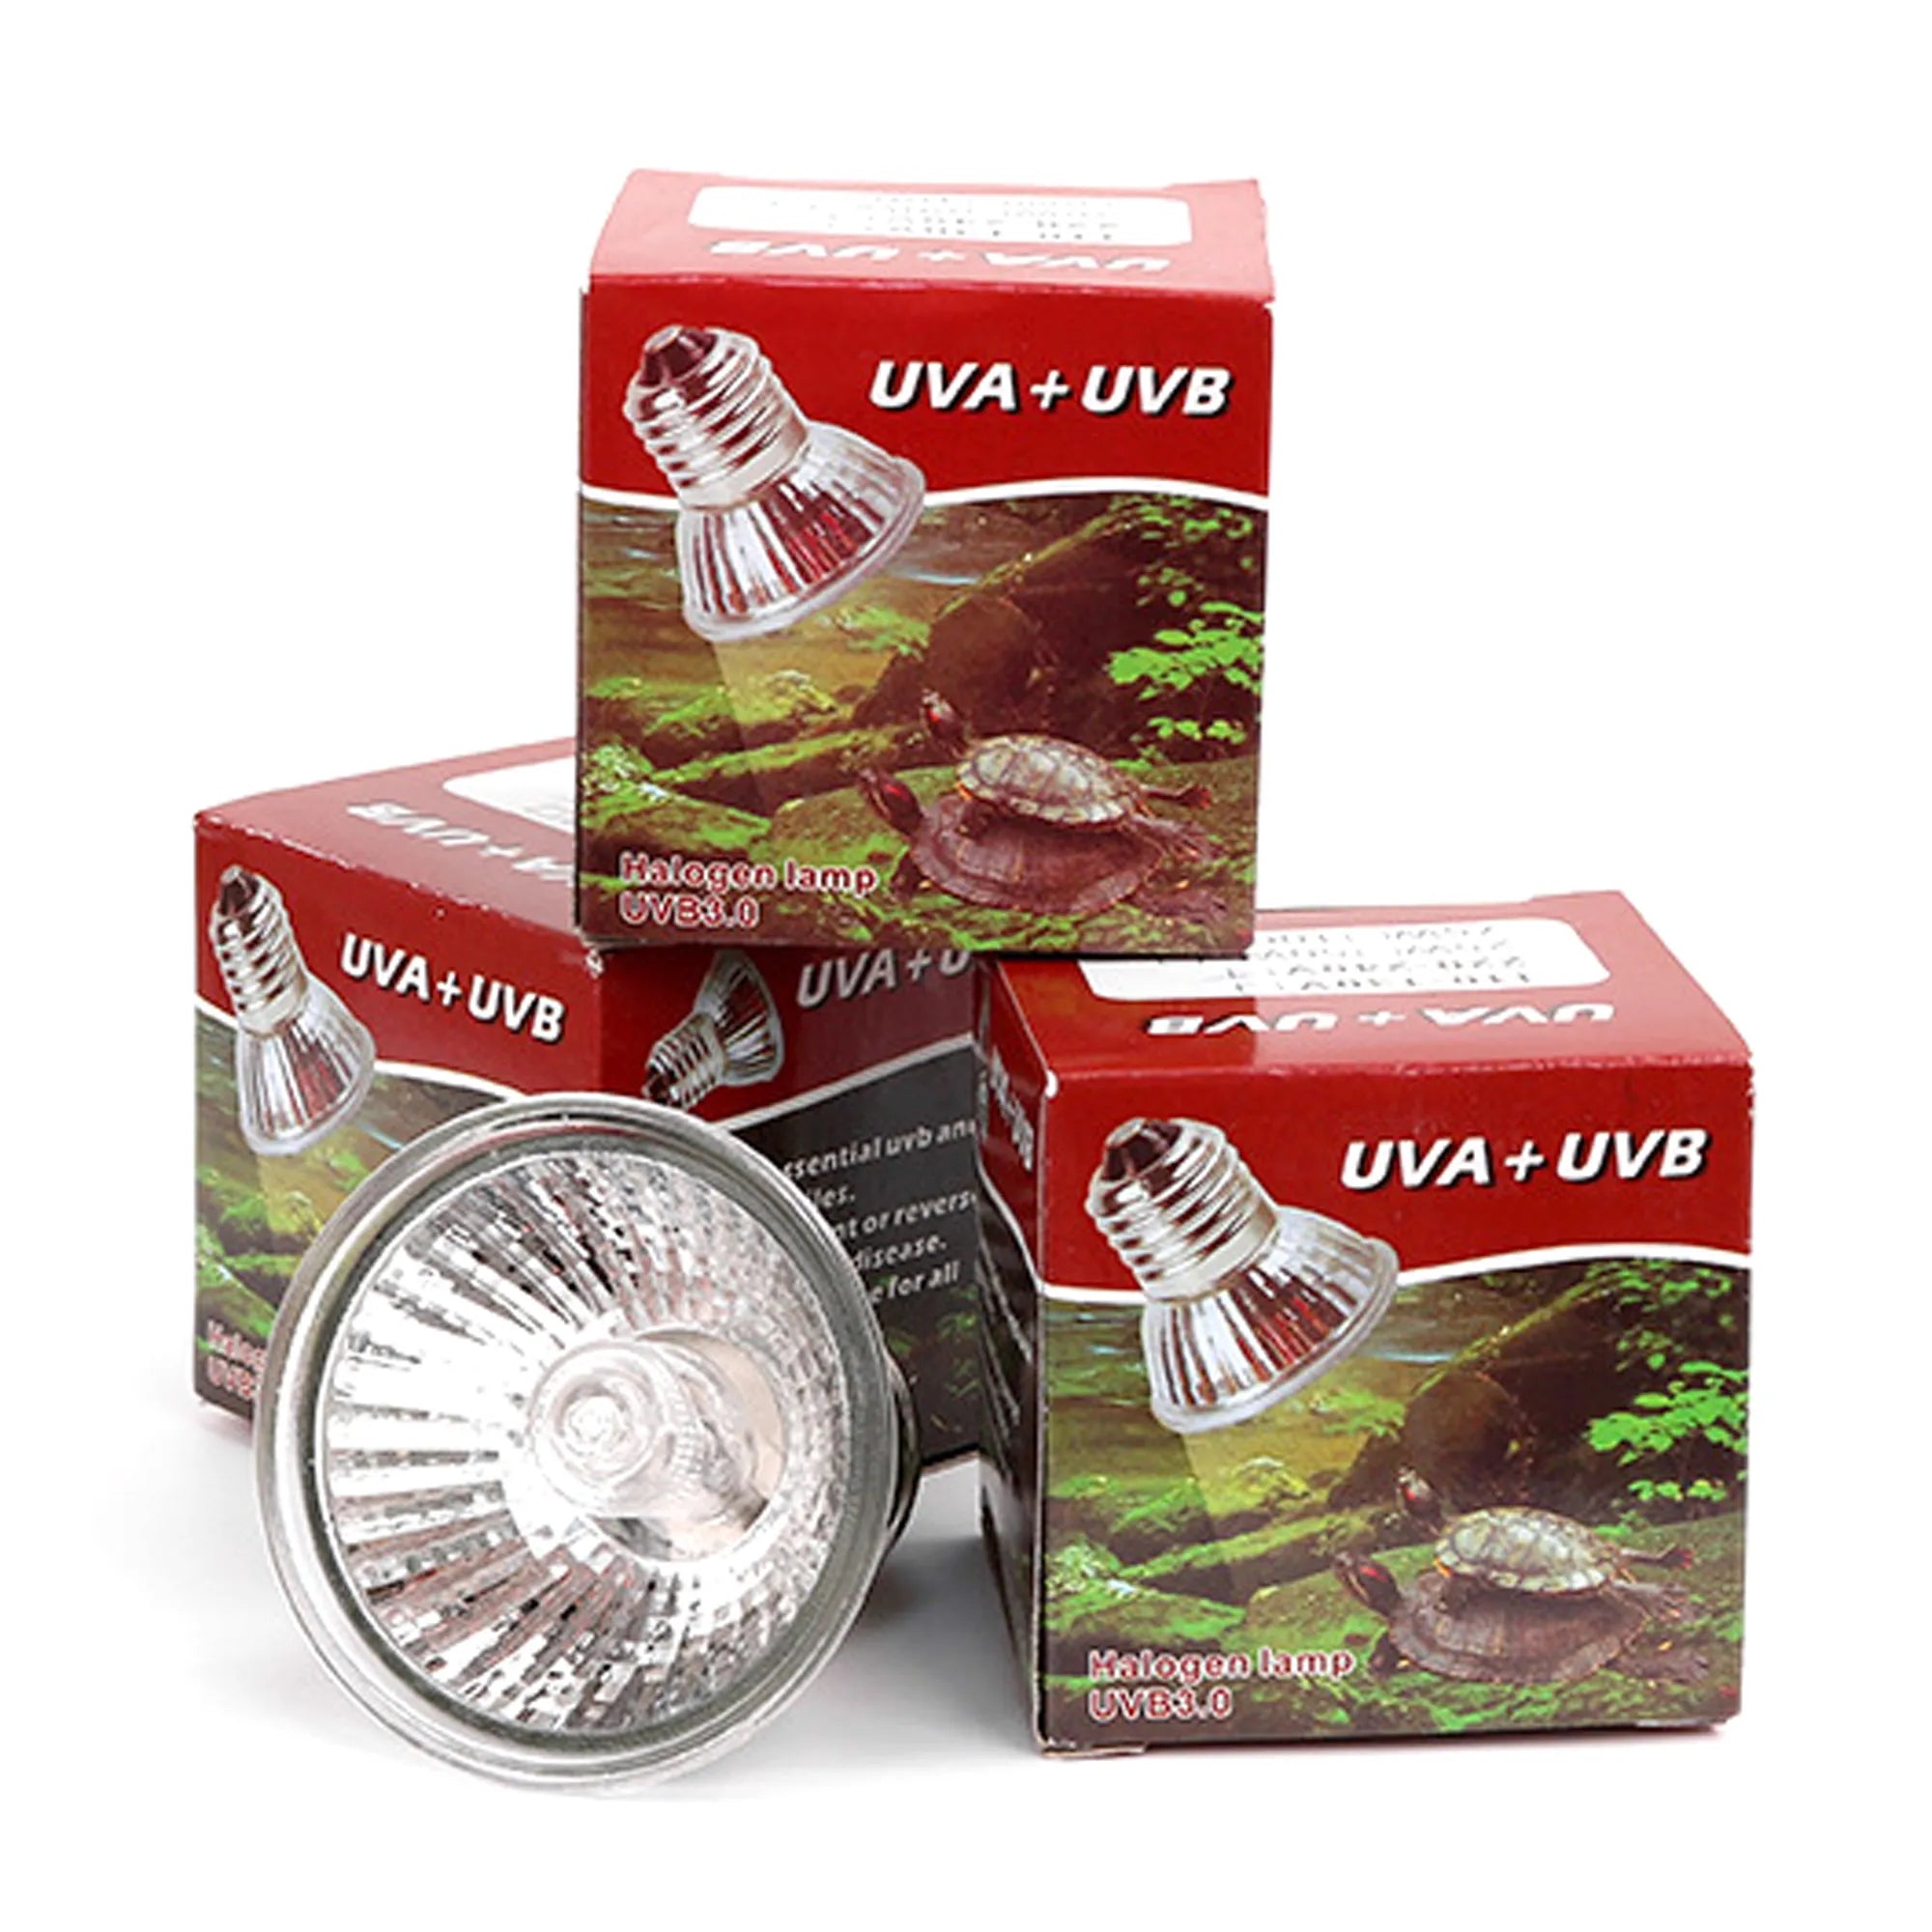 UVA+UVB 3.0 Pet Heat Lamp